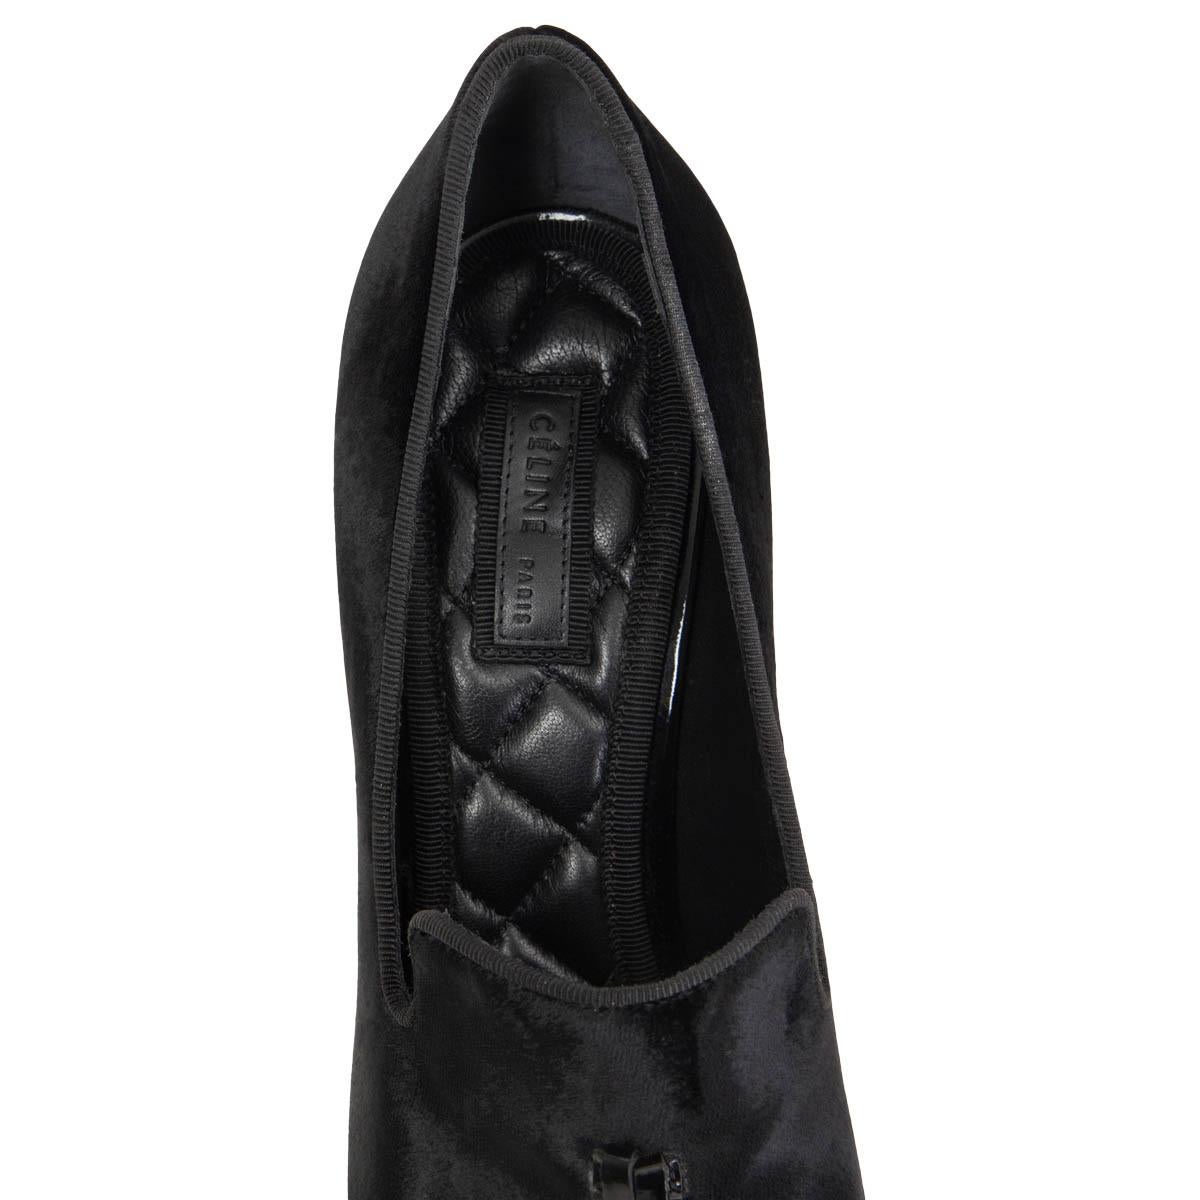 Black CELINE black VELVET TASSEL Pumps Shoes 40